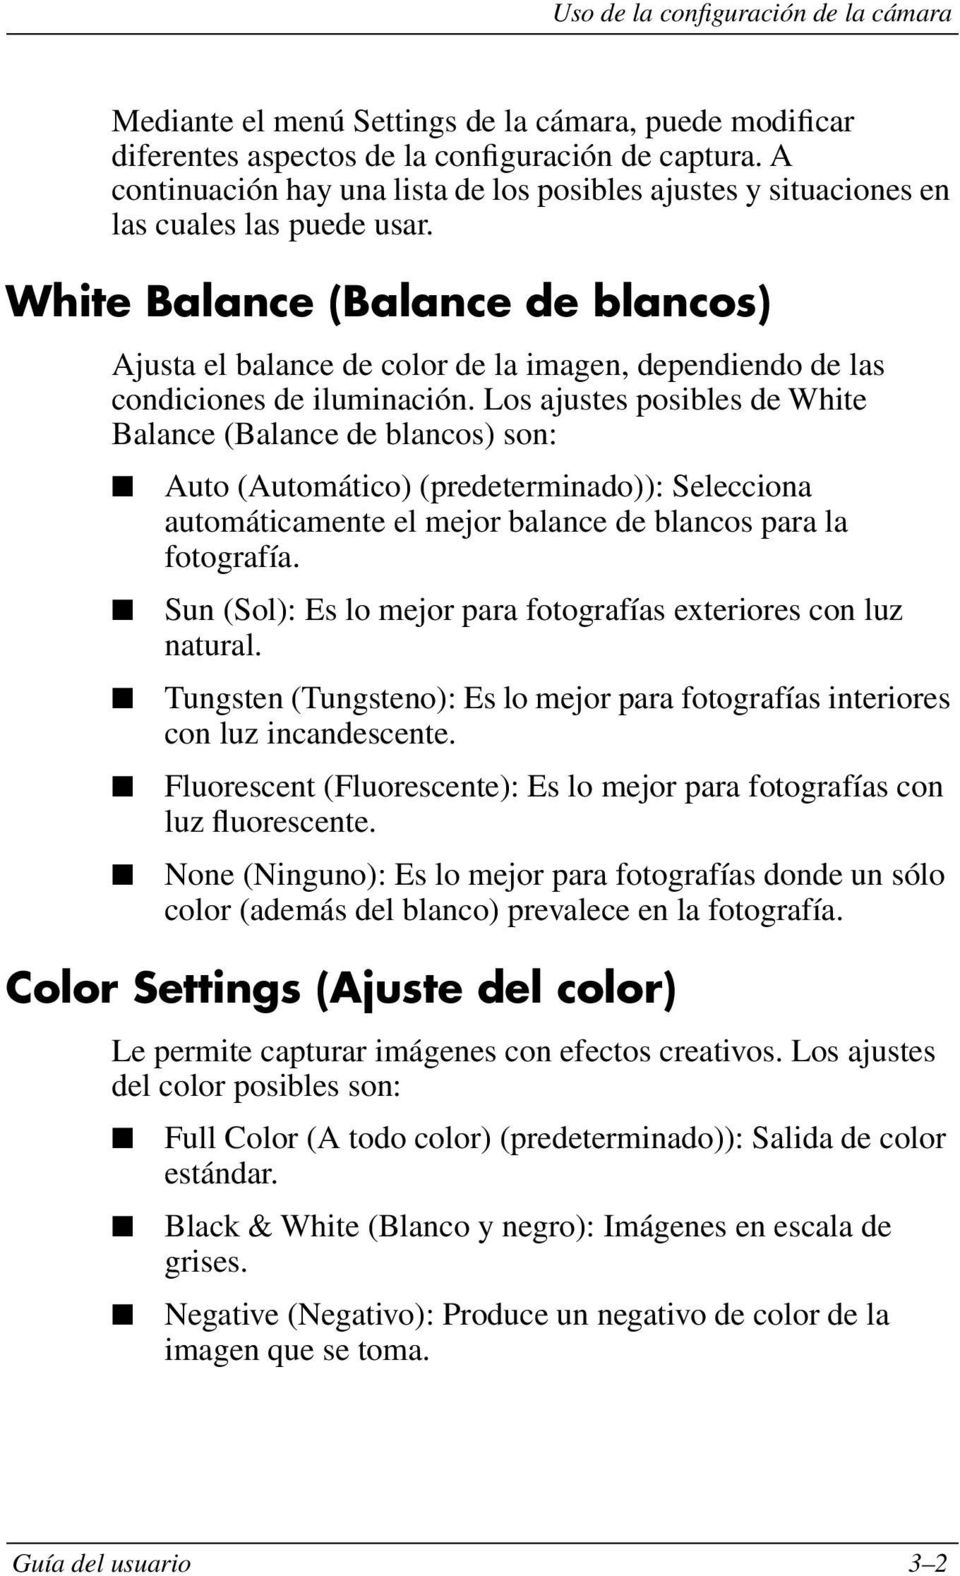 White Balance (Balance de blancos) Ajusta el balance de color de la imagen, dependiendo de las condiciones de iluminación.